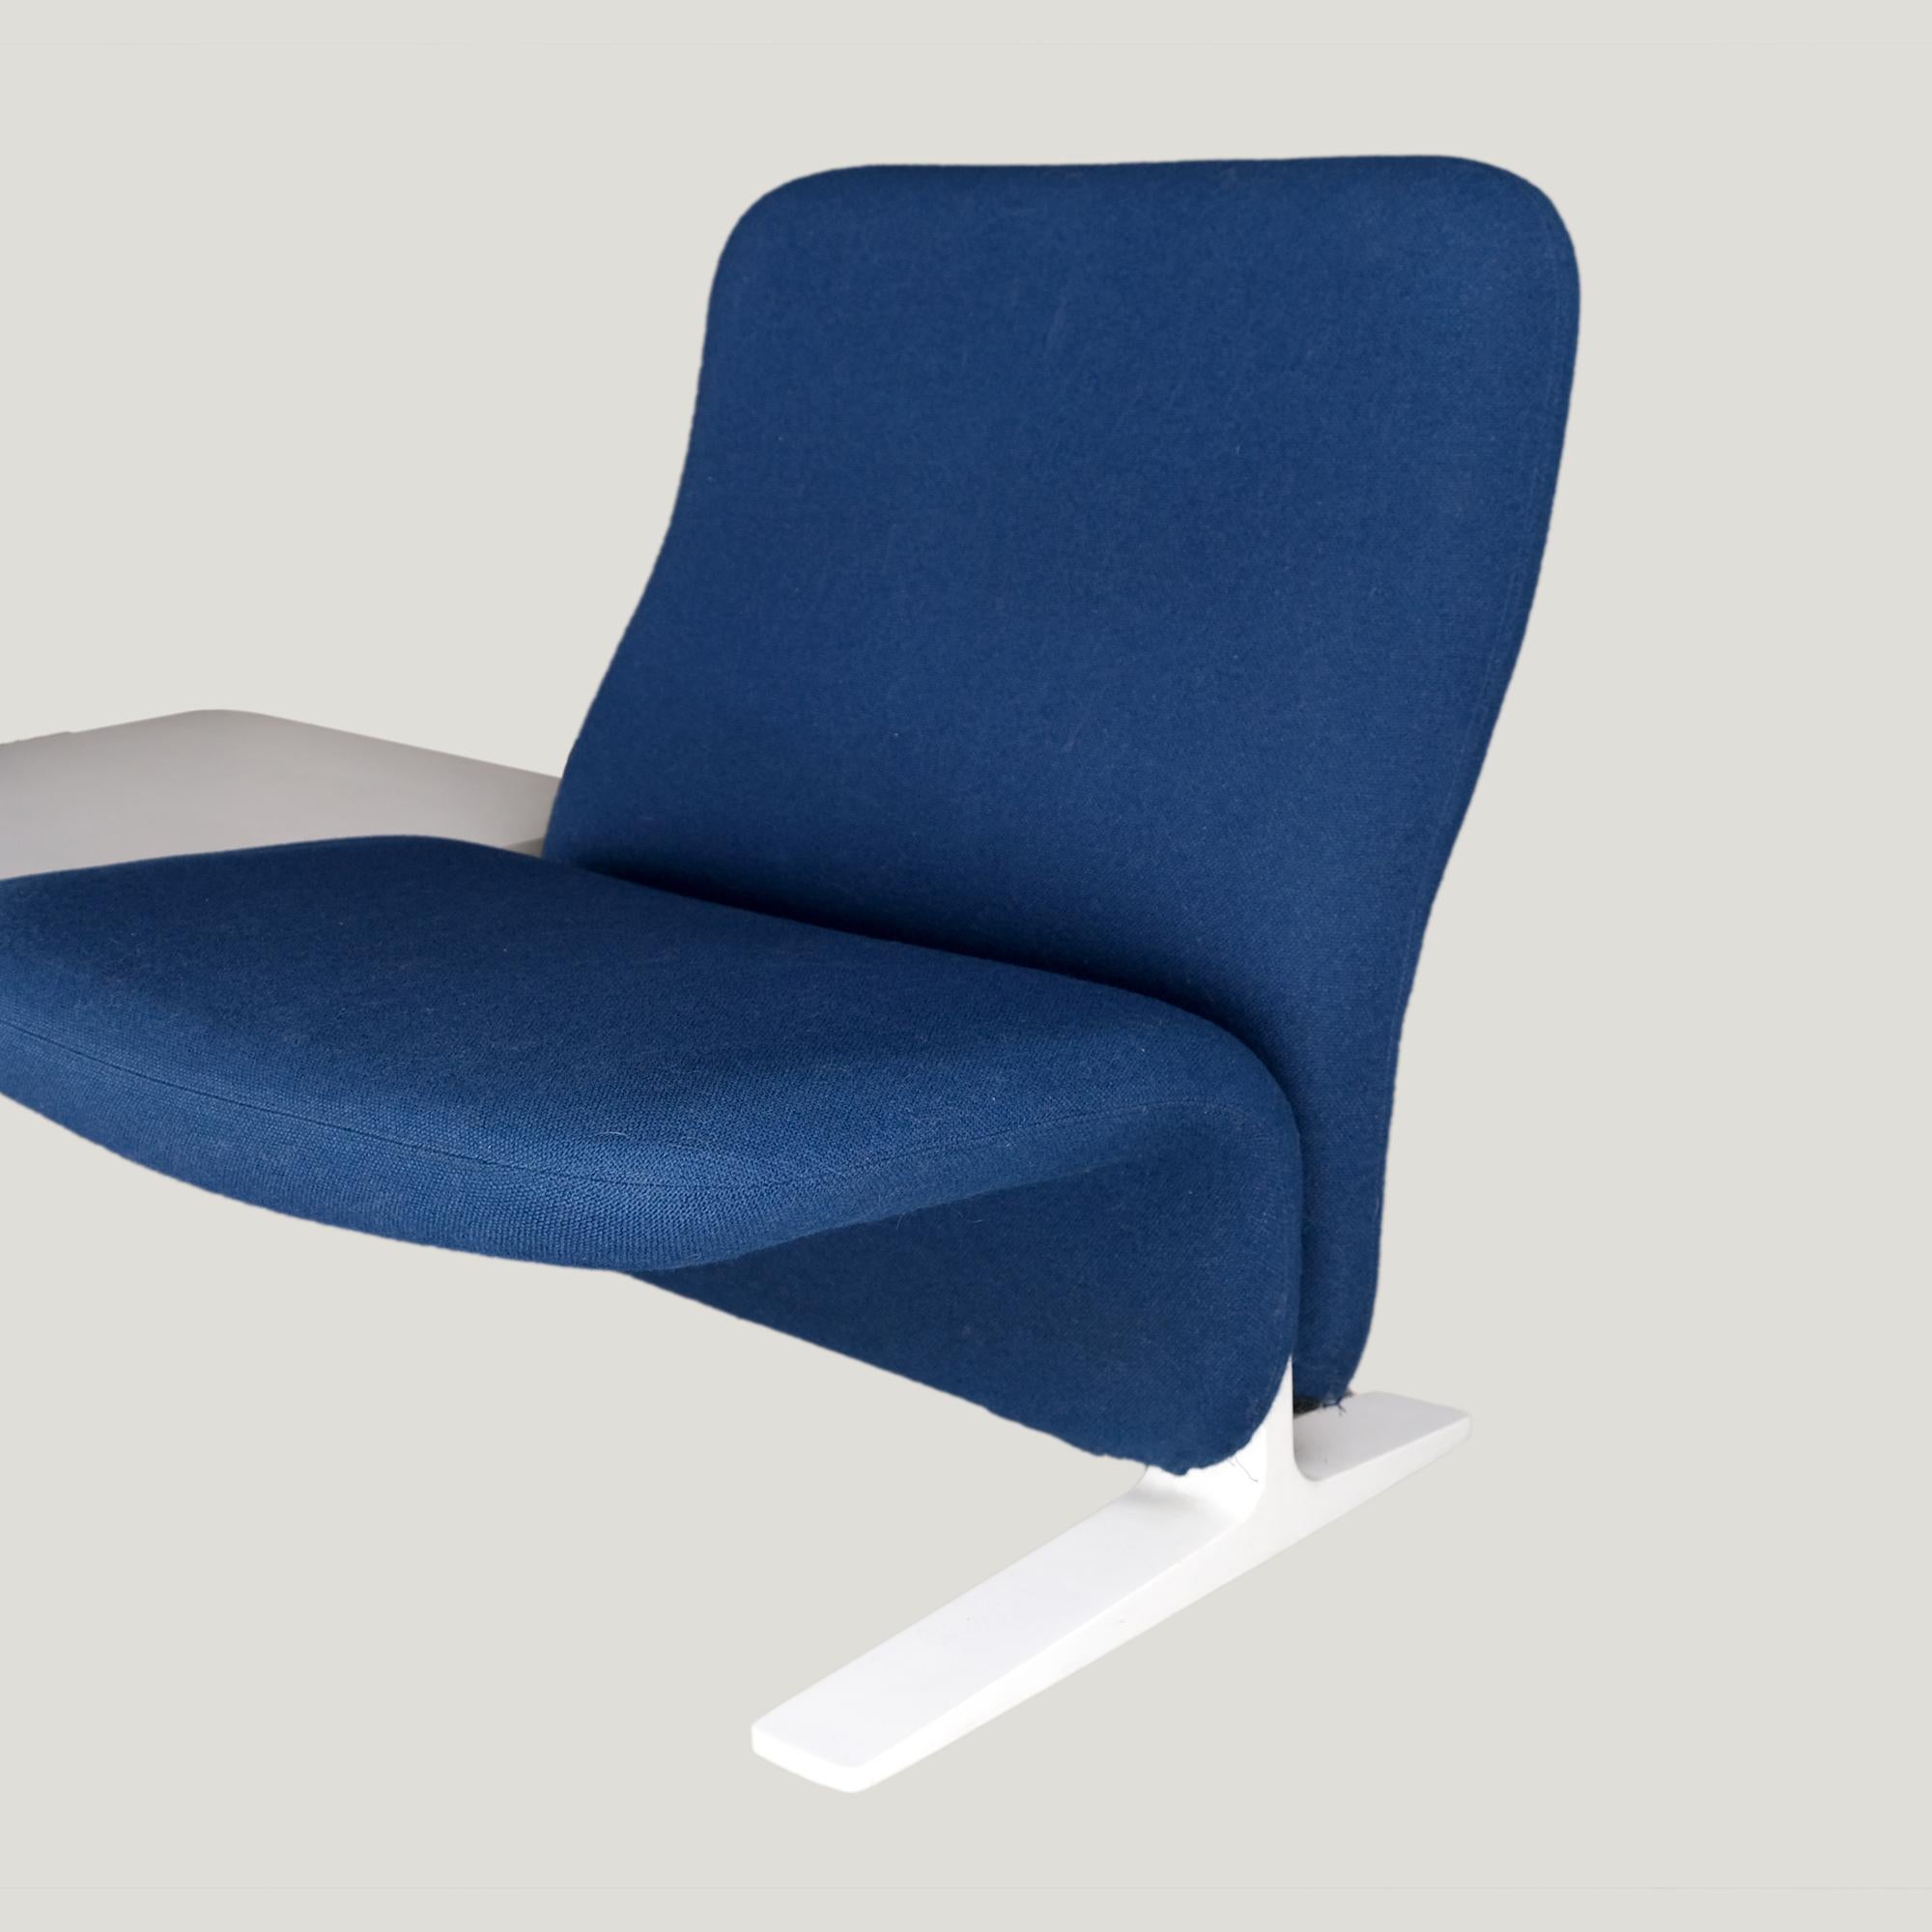 Paire de chaises longues vintage, modèle F780 appelé Calle, avec leur table d'origine par Pierre Paulin (1966).
Chaque fauteuil : largeur 56 cm, profondeur 76, hauteur d'assise : 33 cm.
Très bonnes conditions.

Pierre Paulin est connu pour avoir été